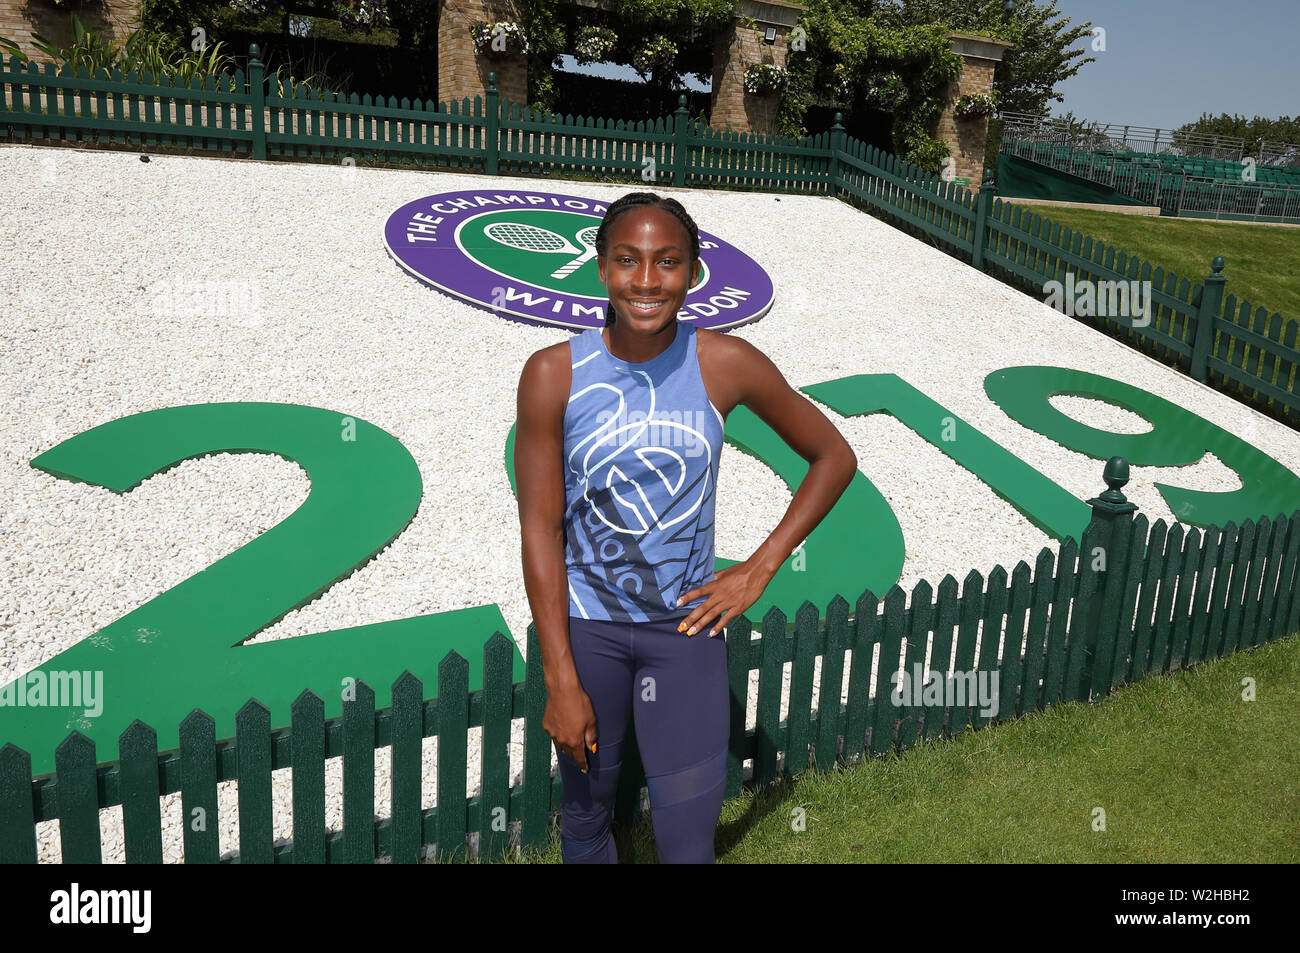 Cori "Coco" gauff (USA), die jüngste Frau, die jemals für den Hauptbewerb in Wimbledon qualifizieren wird dargestellt, vor dem Start der 2019 Meisterschaften an der Wimbledon Championships Tennis, Wimbledon, London Am 29. Juni, 2019 Stockfoto